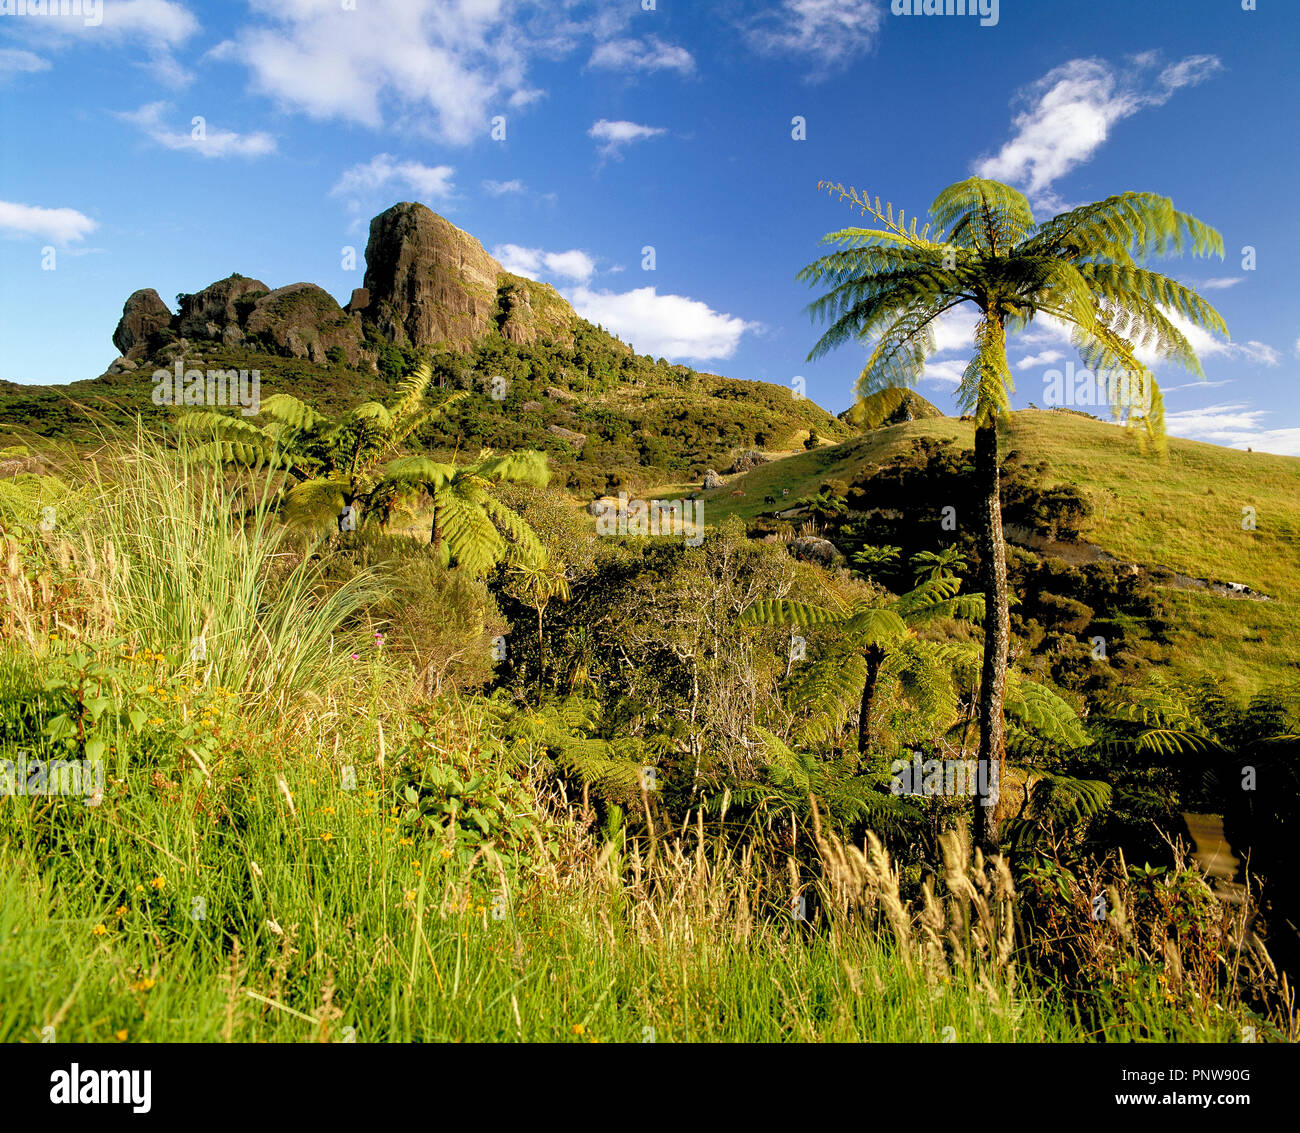 Nueva Zelandia. El norte de la isla. Paisaje rocoso en la colina y helechos arborescentes. Foto de stock